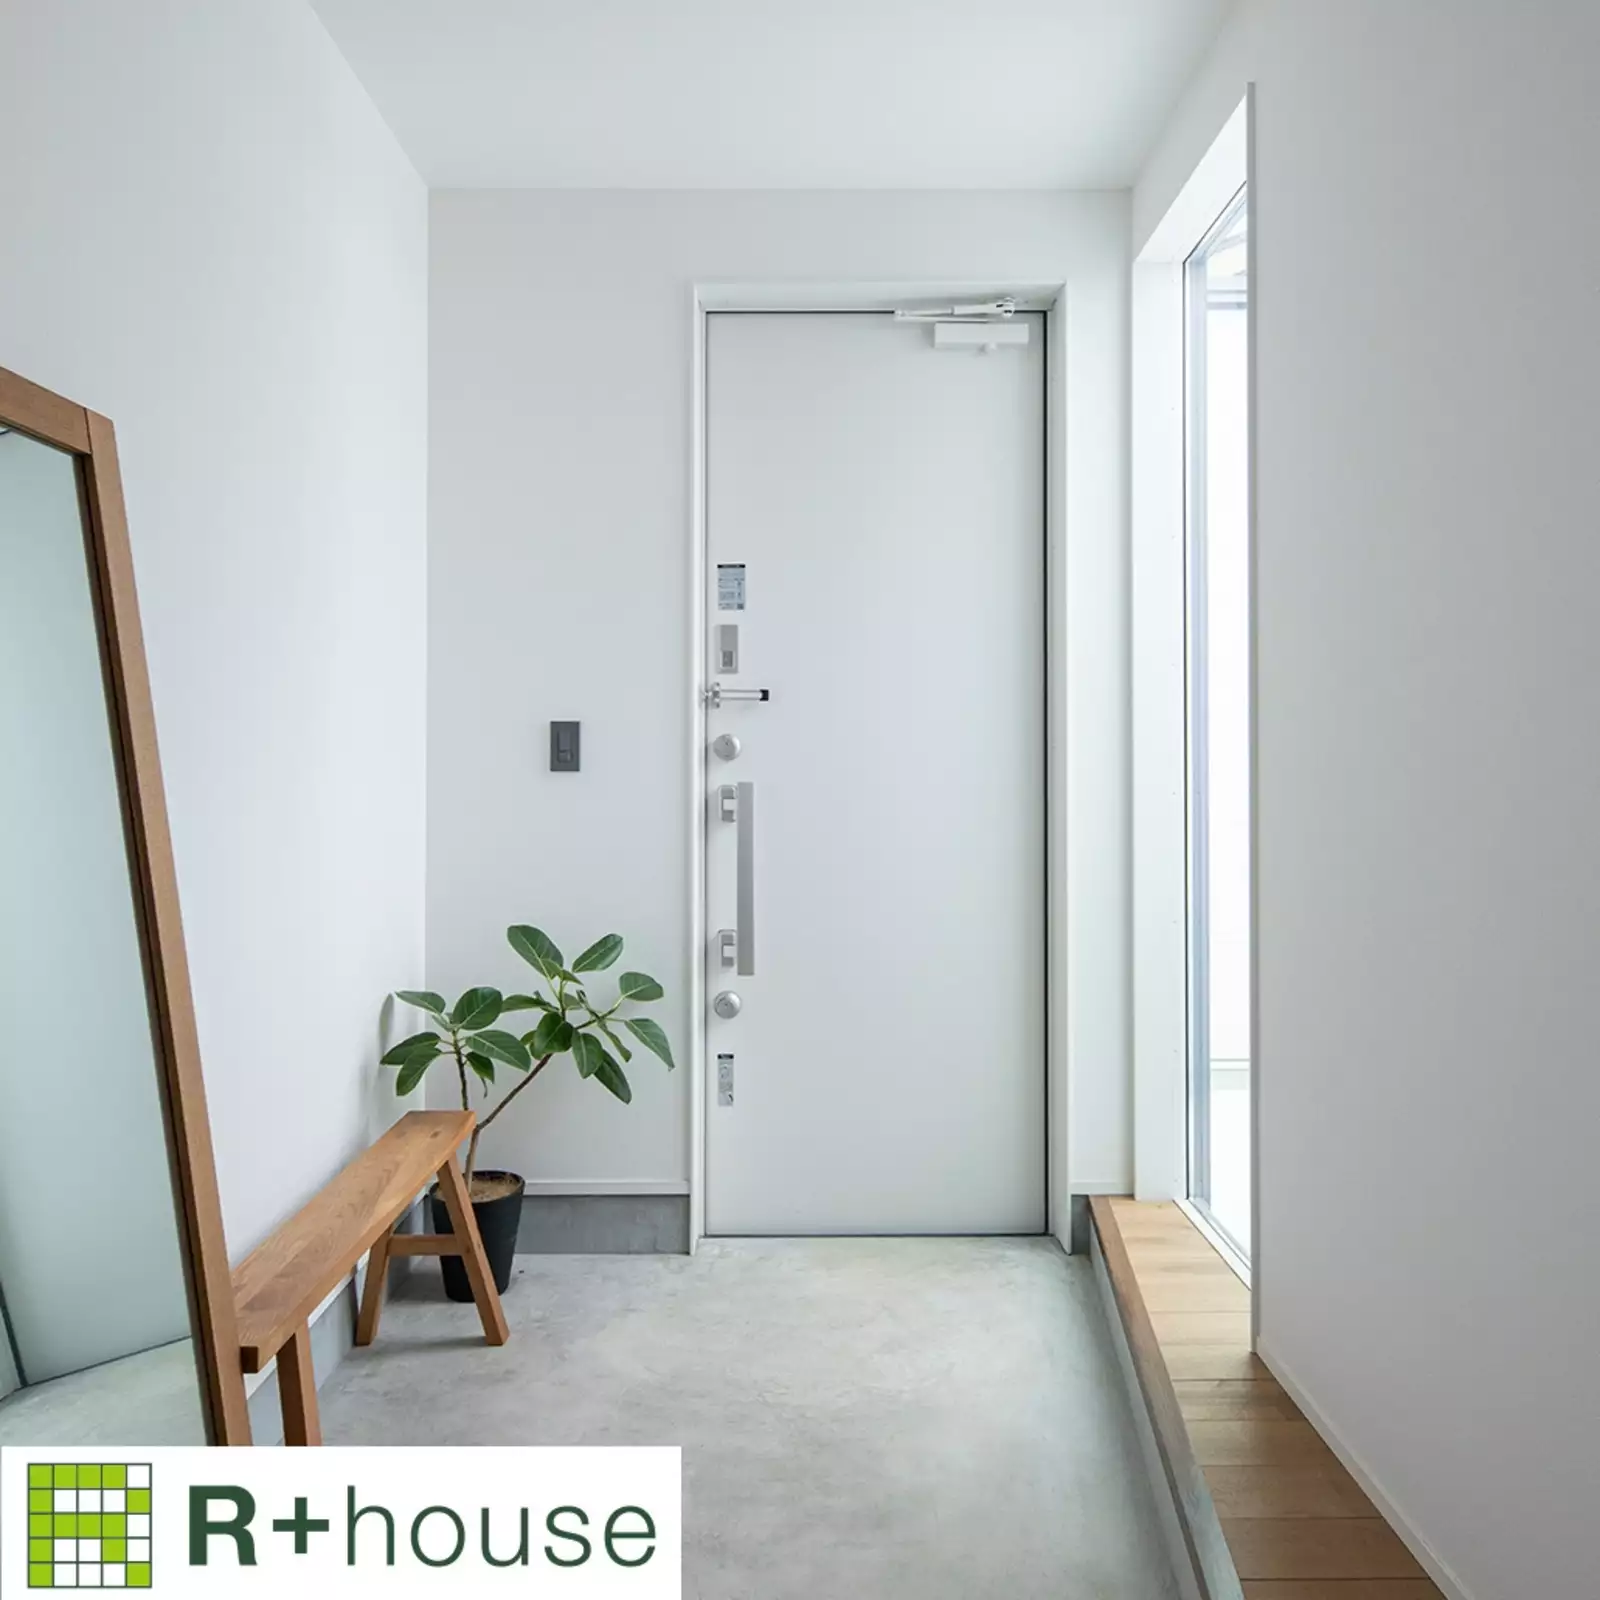 R+houseの物件の玄関の写真です。白を基調とした玄関。大きな窓があり明るい空間